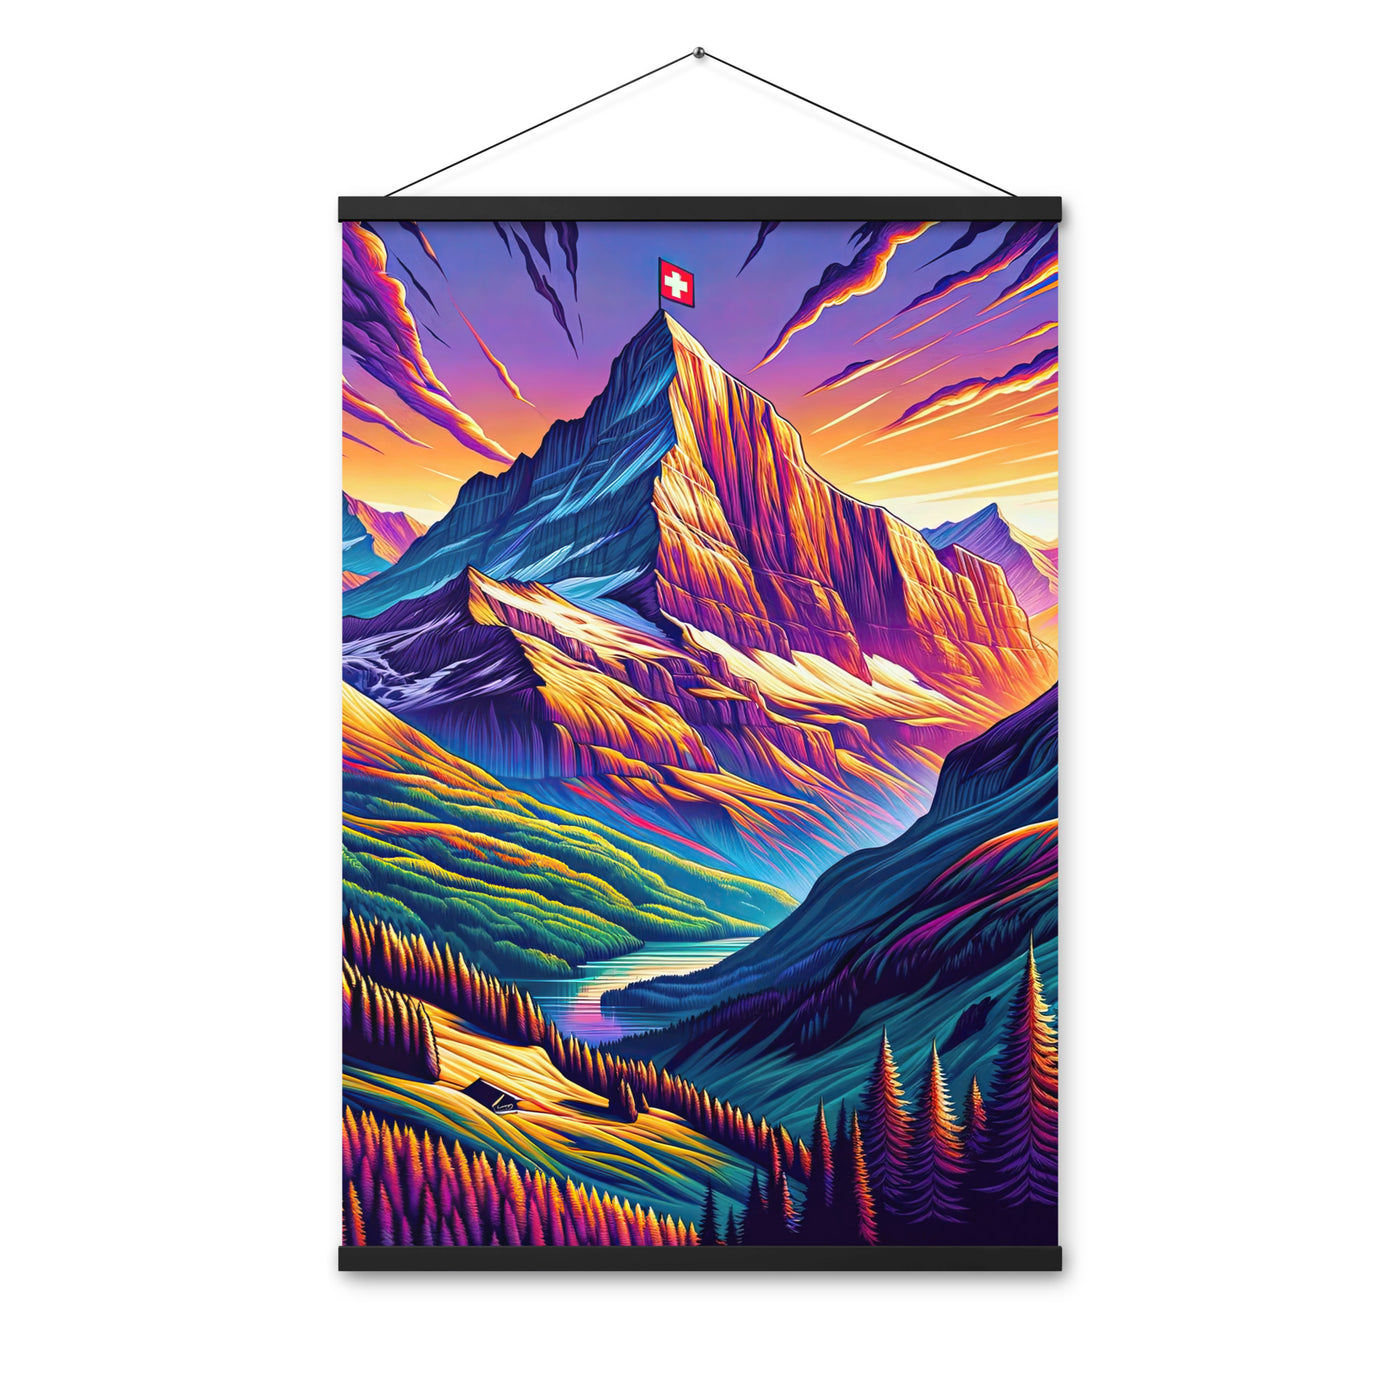 Bergpracht mit Schweizer Flagge: Farbenfrohe Illustration einer Berglandschaft - Premium Poster mit Aufhängung berge xxx yyy zzz 61 x 91.4 cm